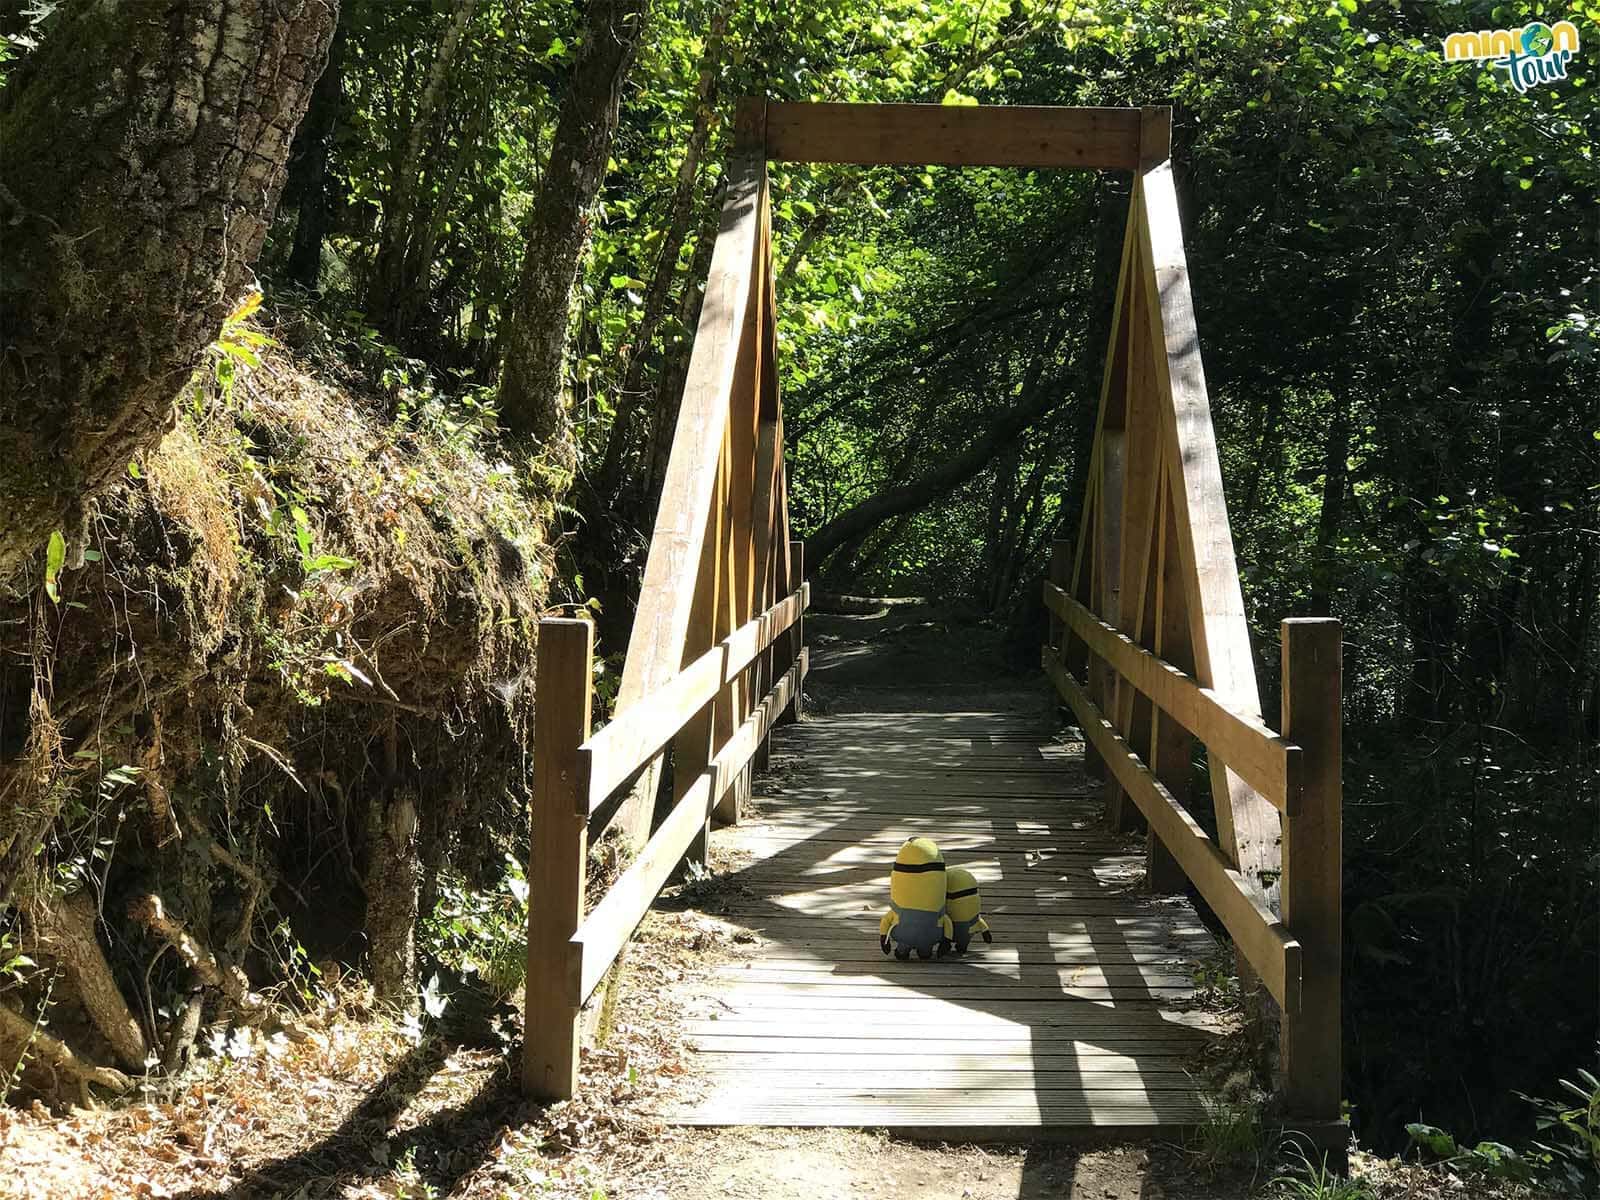 Cruzando por el puentecito de madera